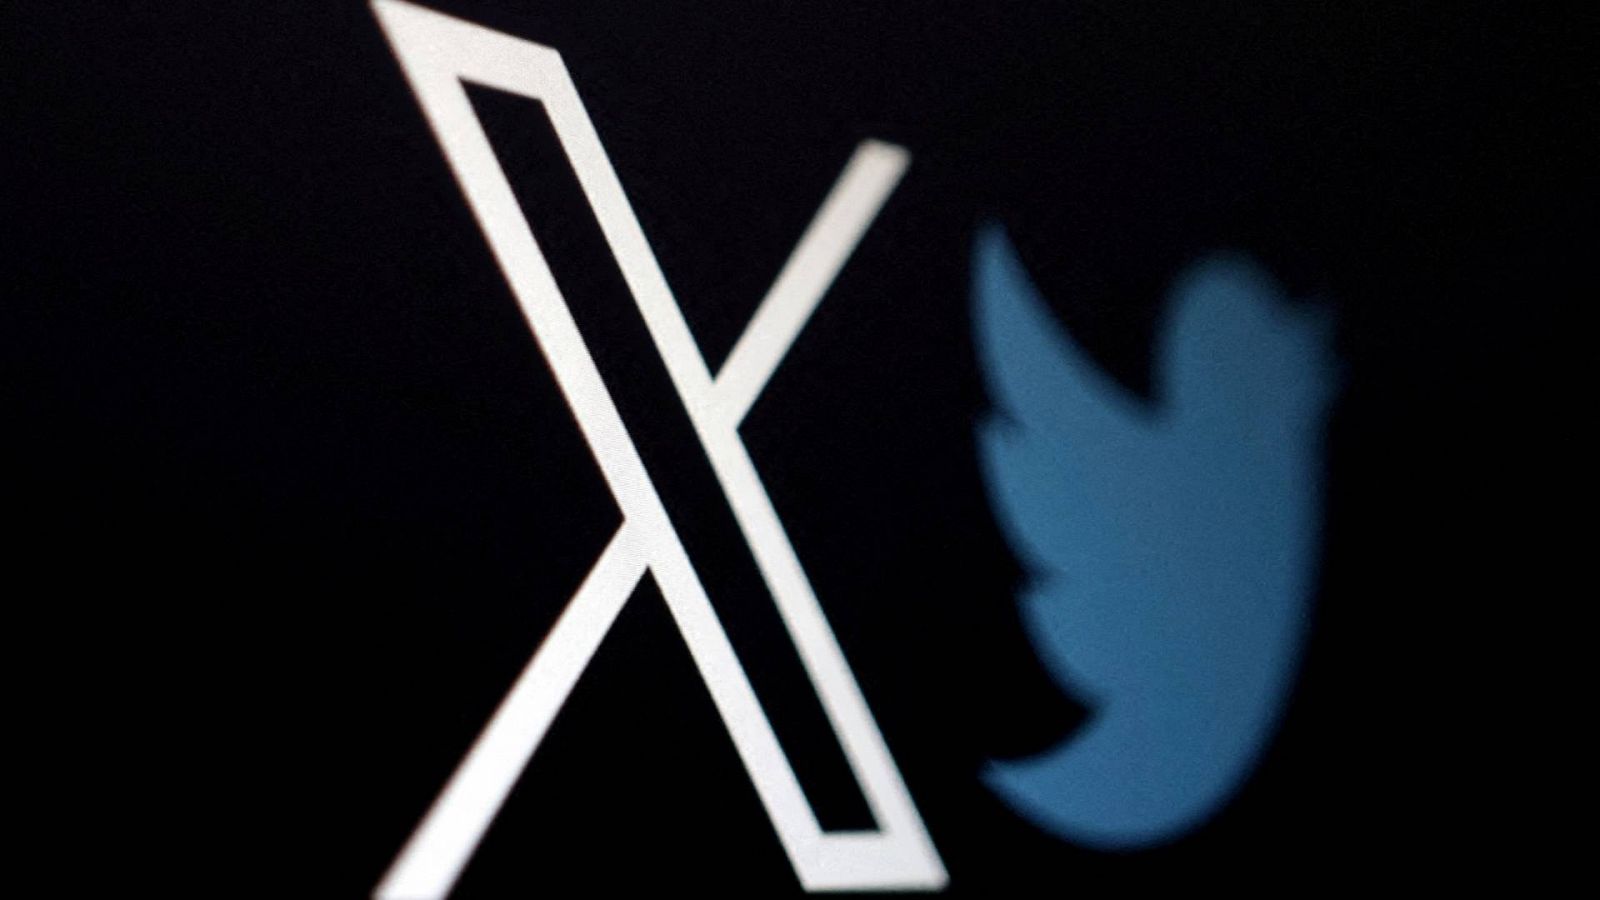 La red social X/Twitter "está siendo utilizada para difundir contenido ilegal y desinformación en la UE".